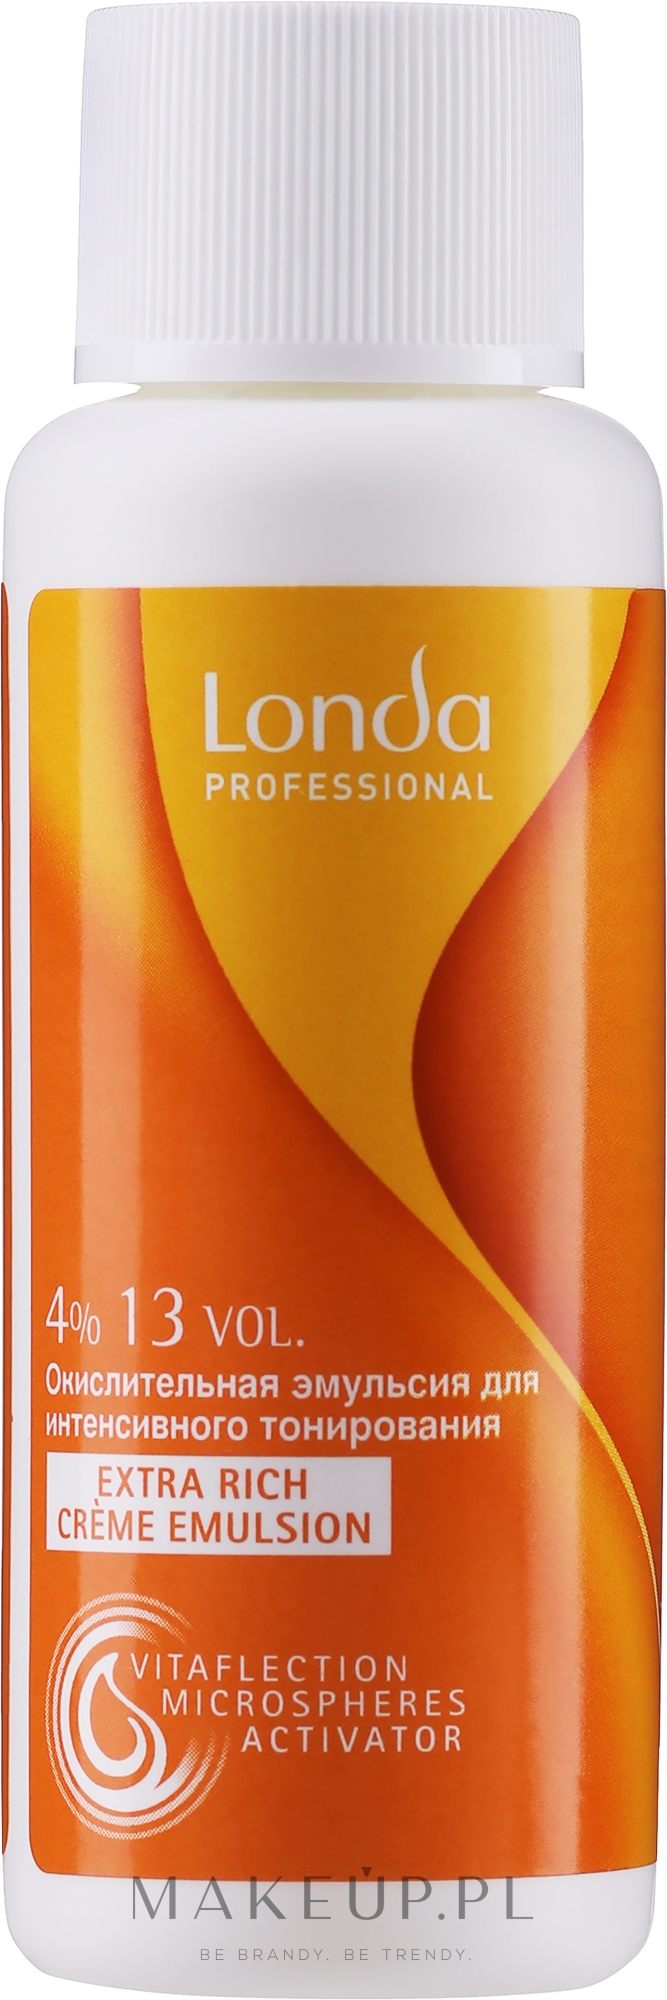 Kremowa emulsja utleniająca 4% 13 vol. - Londa Professional Londacolor — Zdjęcie 60 ml